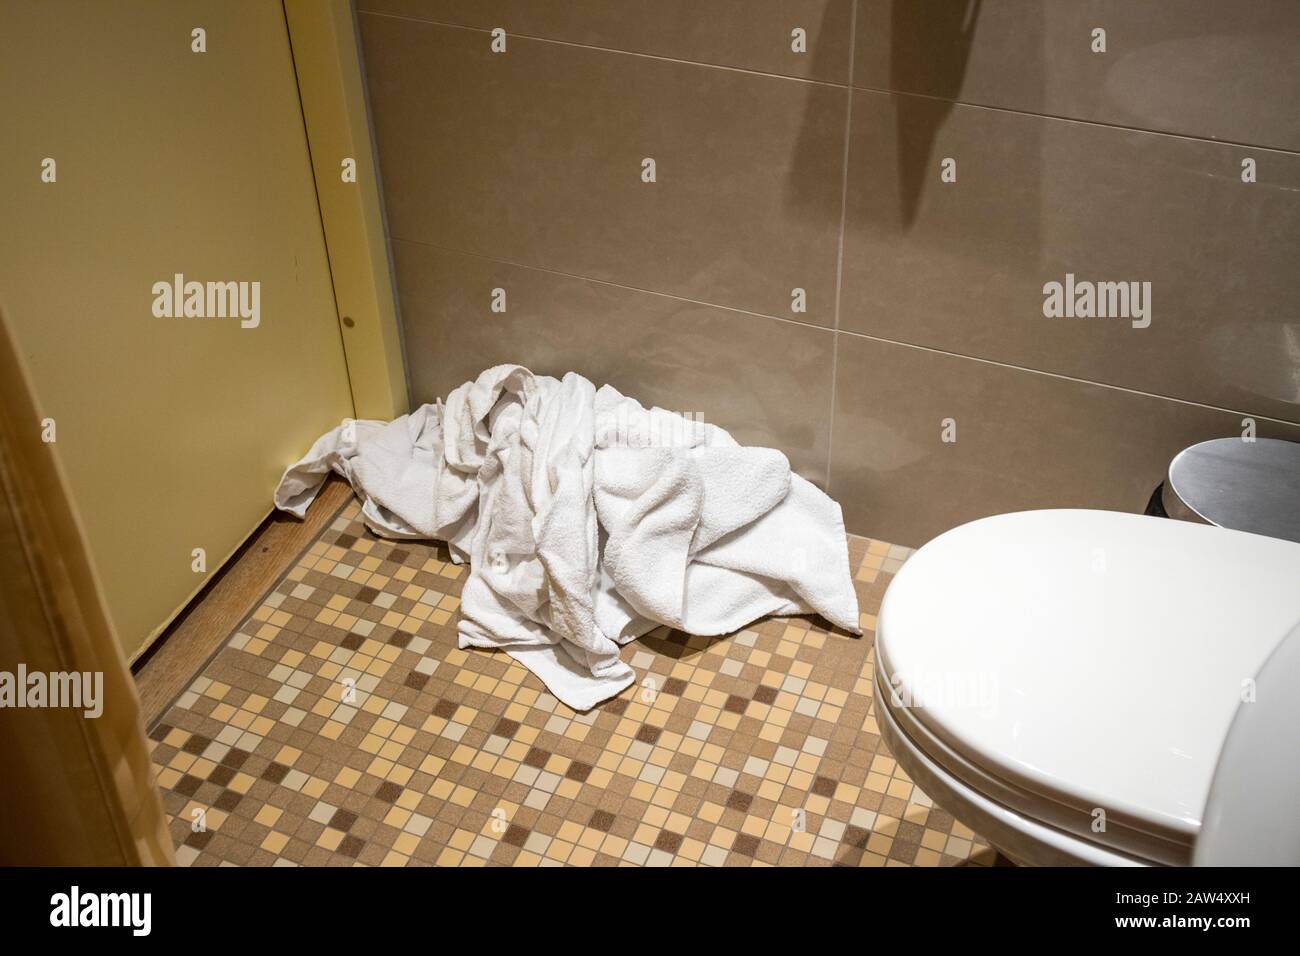 Haufen schmutziger gebrauchter Handtücher auf dem Boden des Hotelbades. Ordnung und Sauberkeit ersetzen Sie nur die gebrauchten Handtücher auf dem Boden durch saubere. Wasser, Seife und Energie sparen Stockfoto